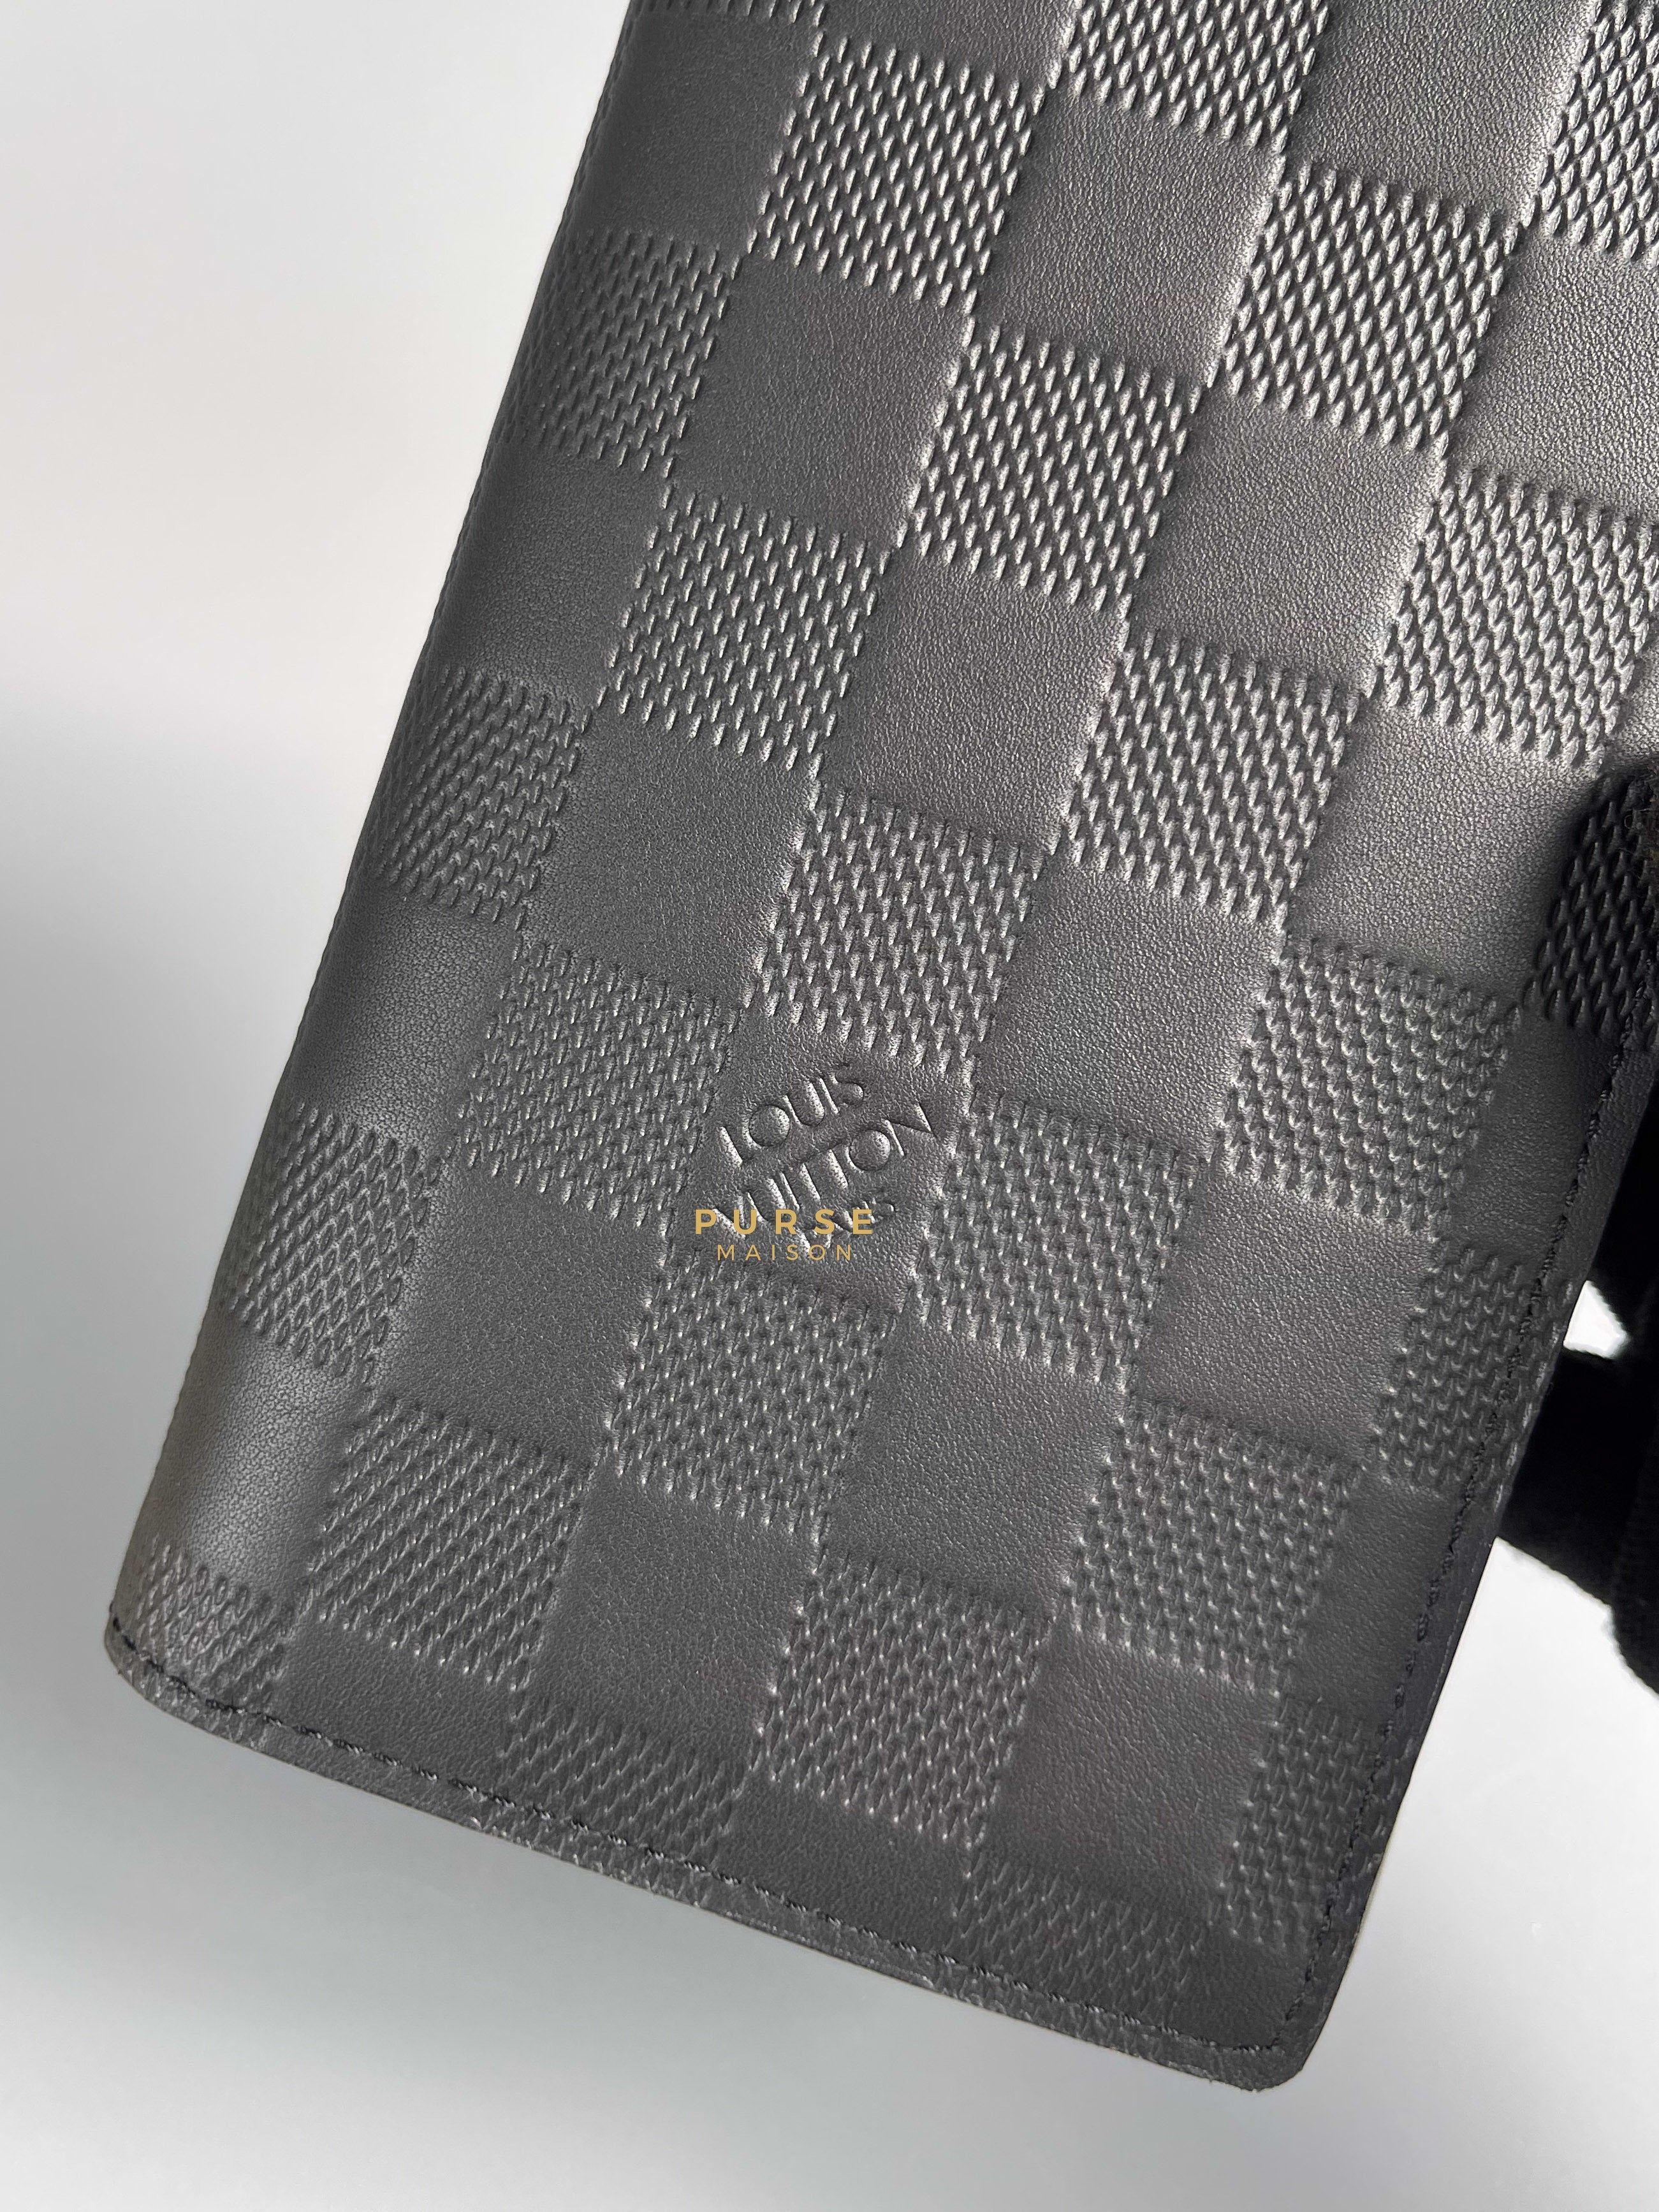 Louis Vuitton Brazza Black Damier Infini Leather Wallet (Microchip) | Purse Maison Luxury Bags Shop